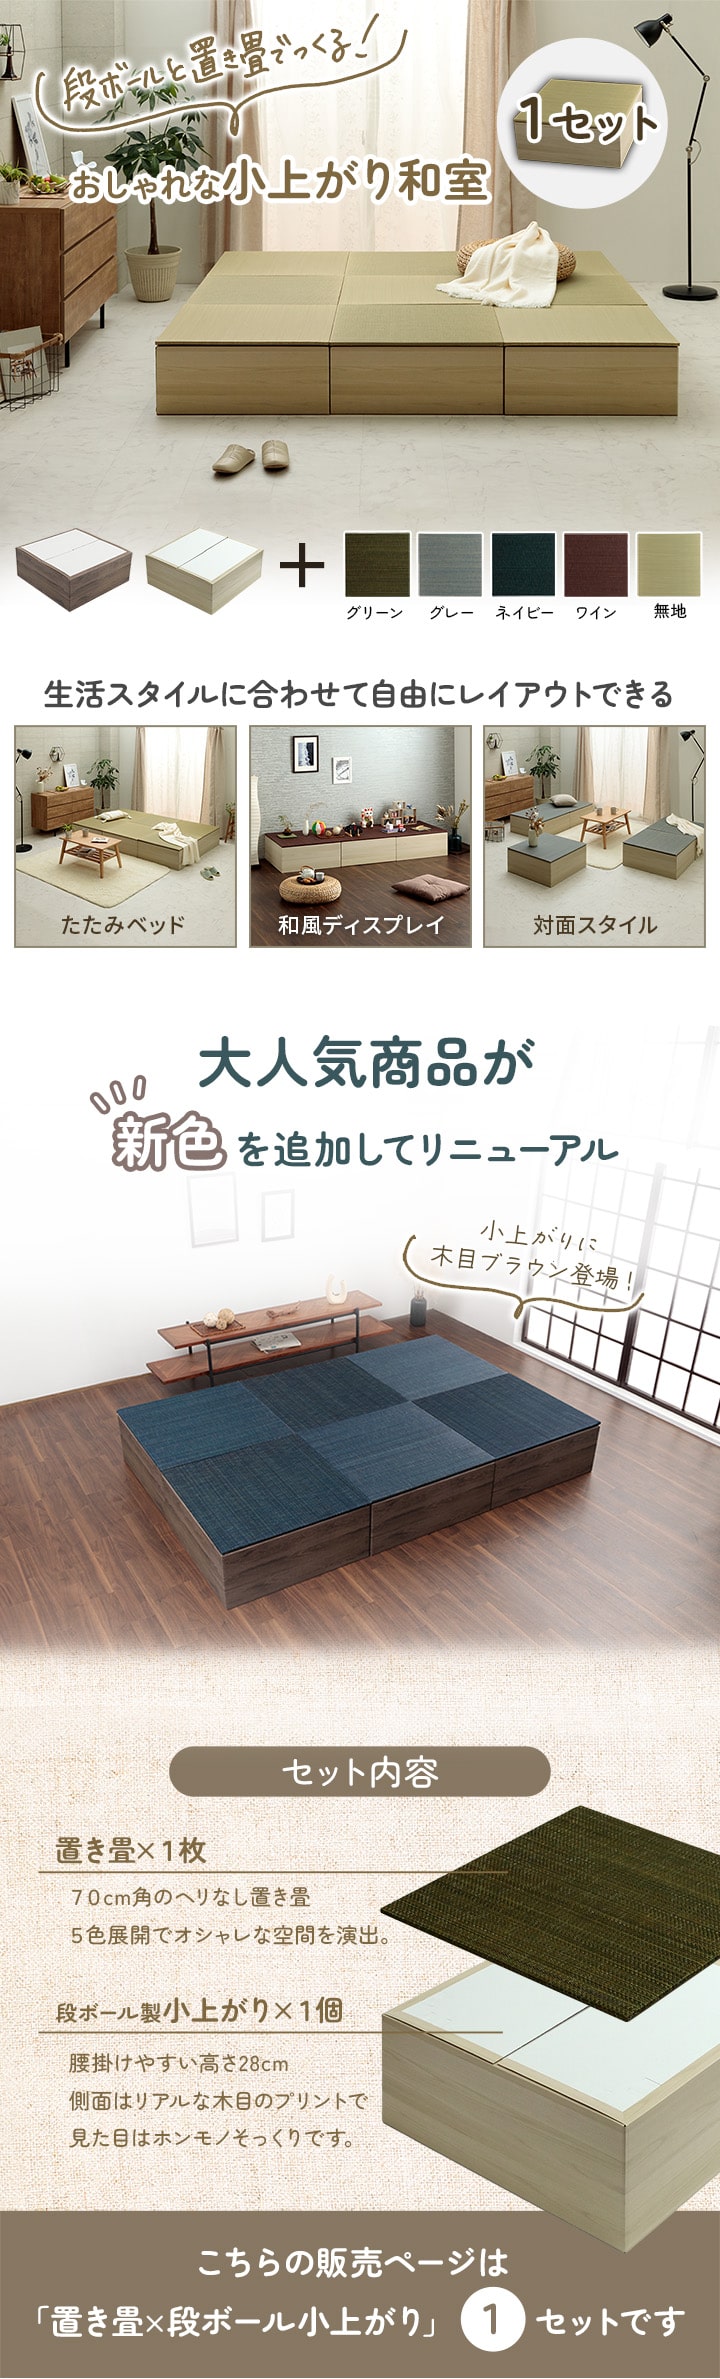 小上がり ユニット 畳 置き畳 セット ダンボール 畳ベッド 簡易ベッド